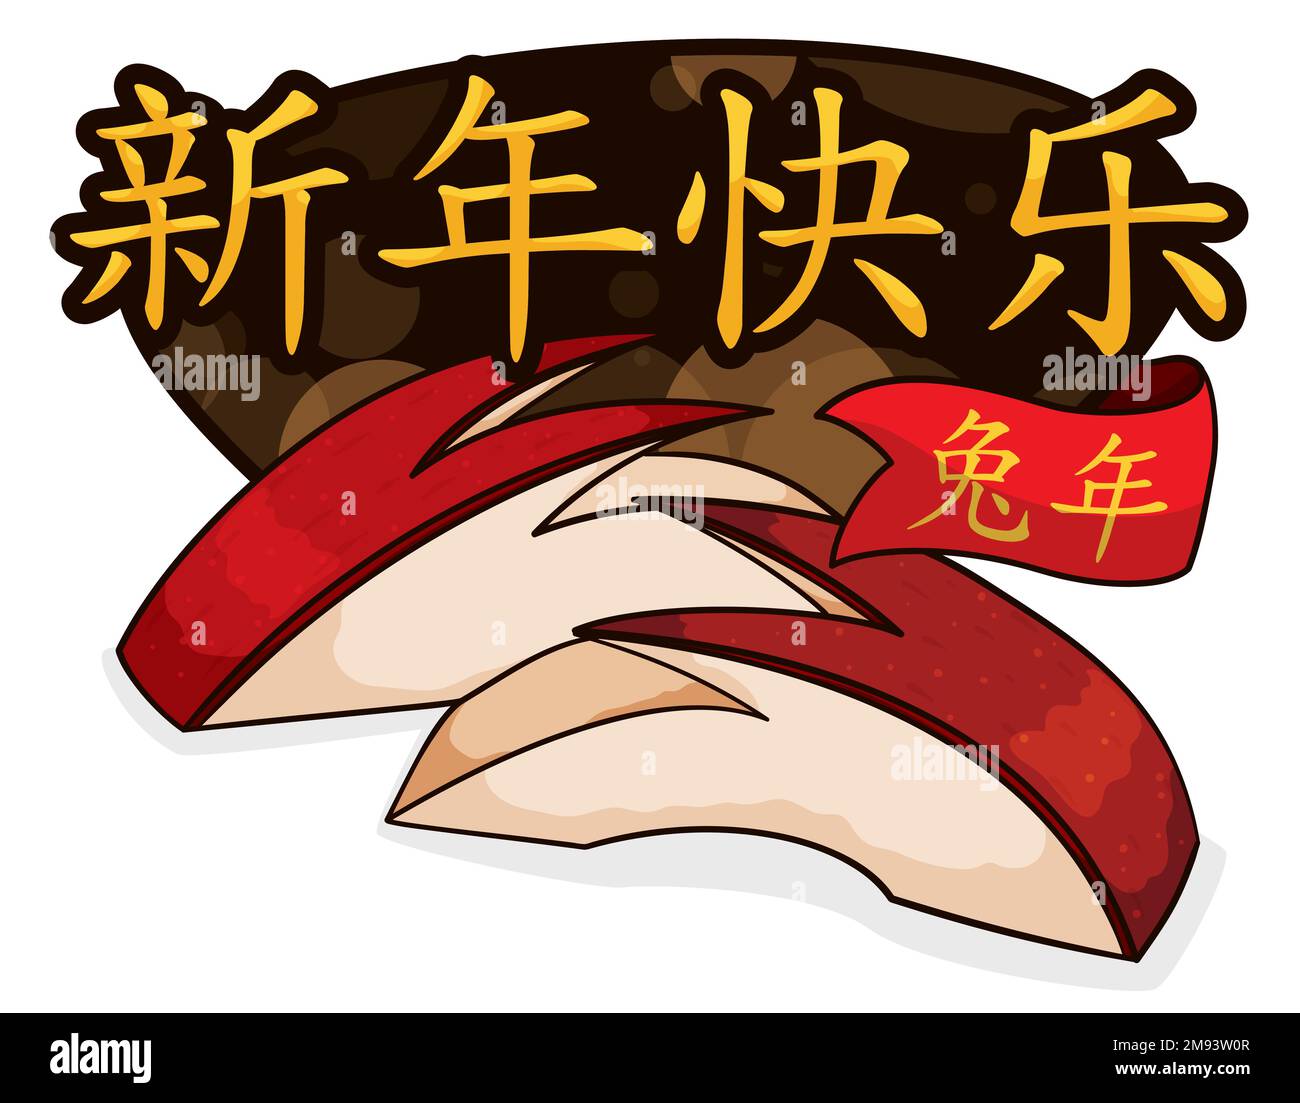 Motif de salutation avec tranches de pommes de lapins, signe d'or et ruban célébrant le nouvel an chinois du lapin (écrit en calligraphie chinoise). Illustration de Vecteur